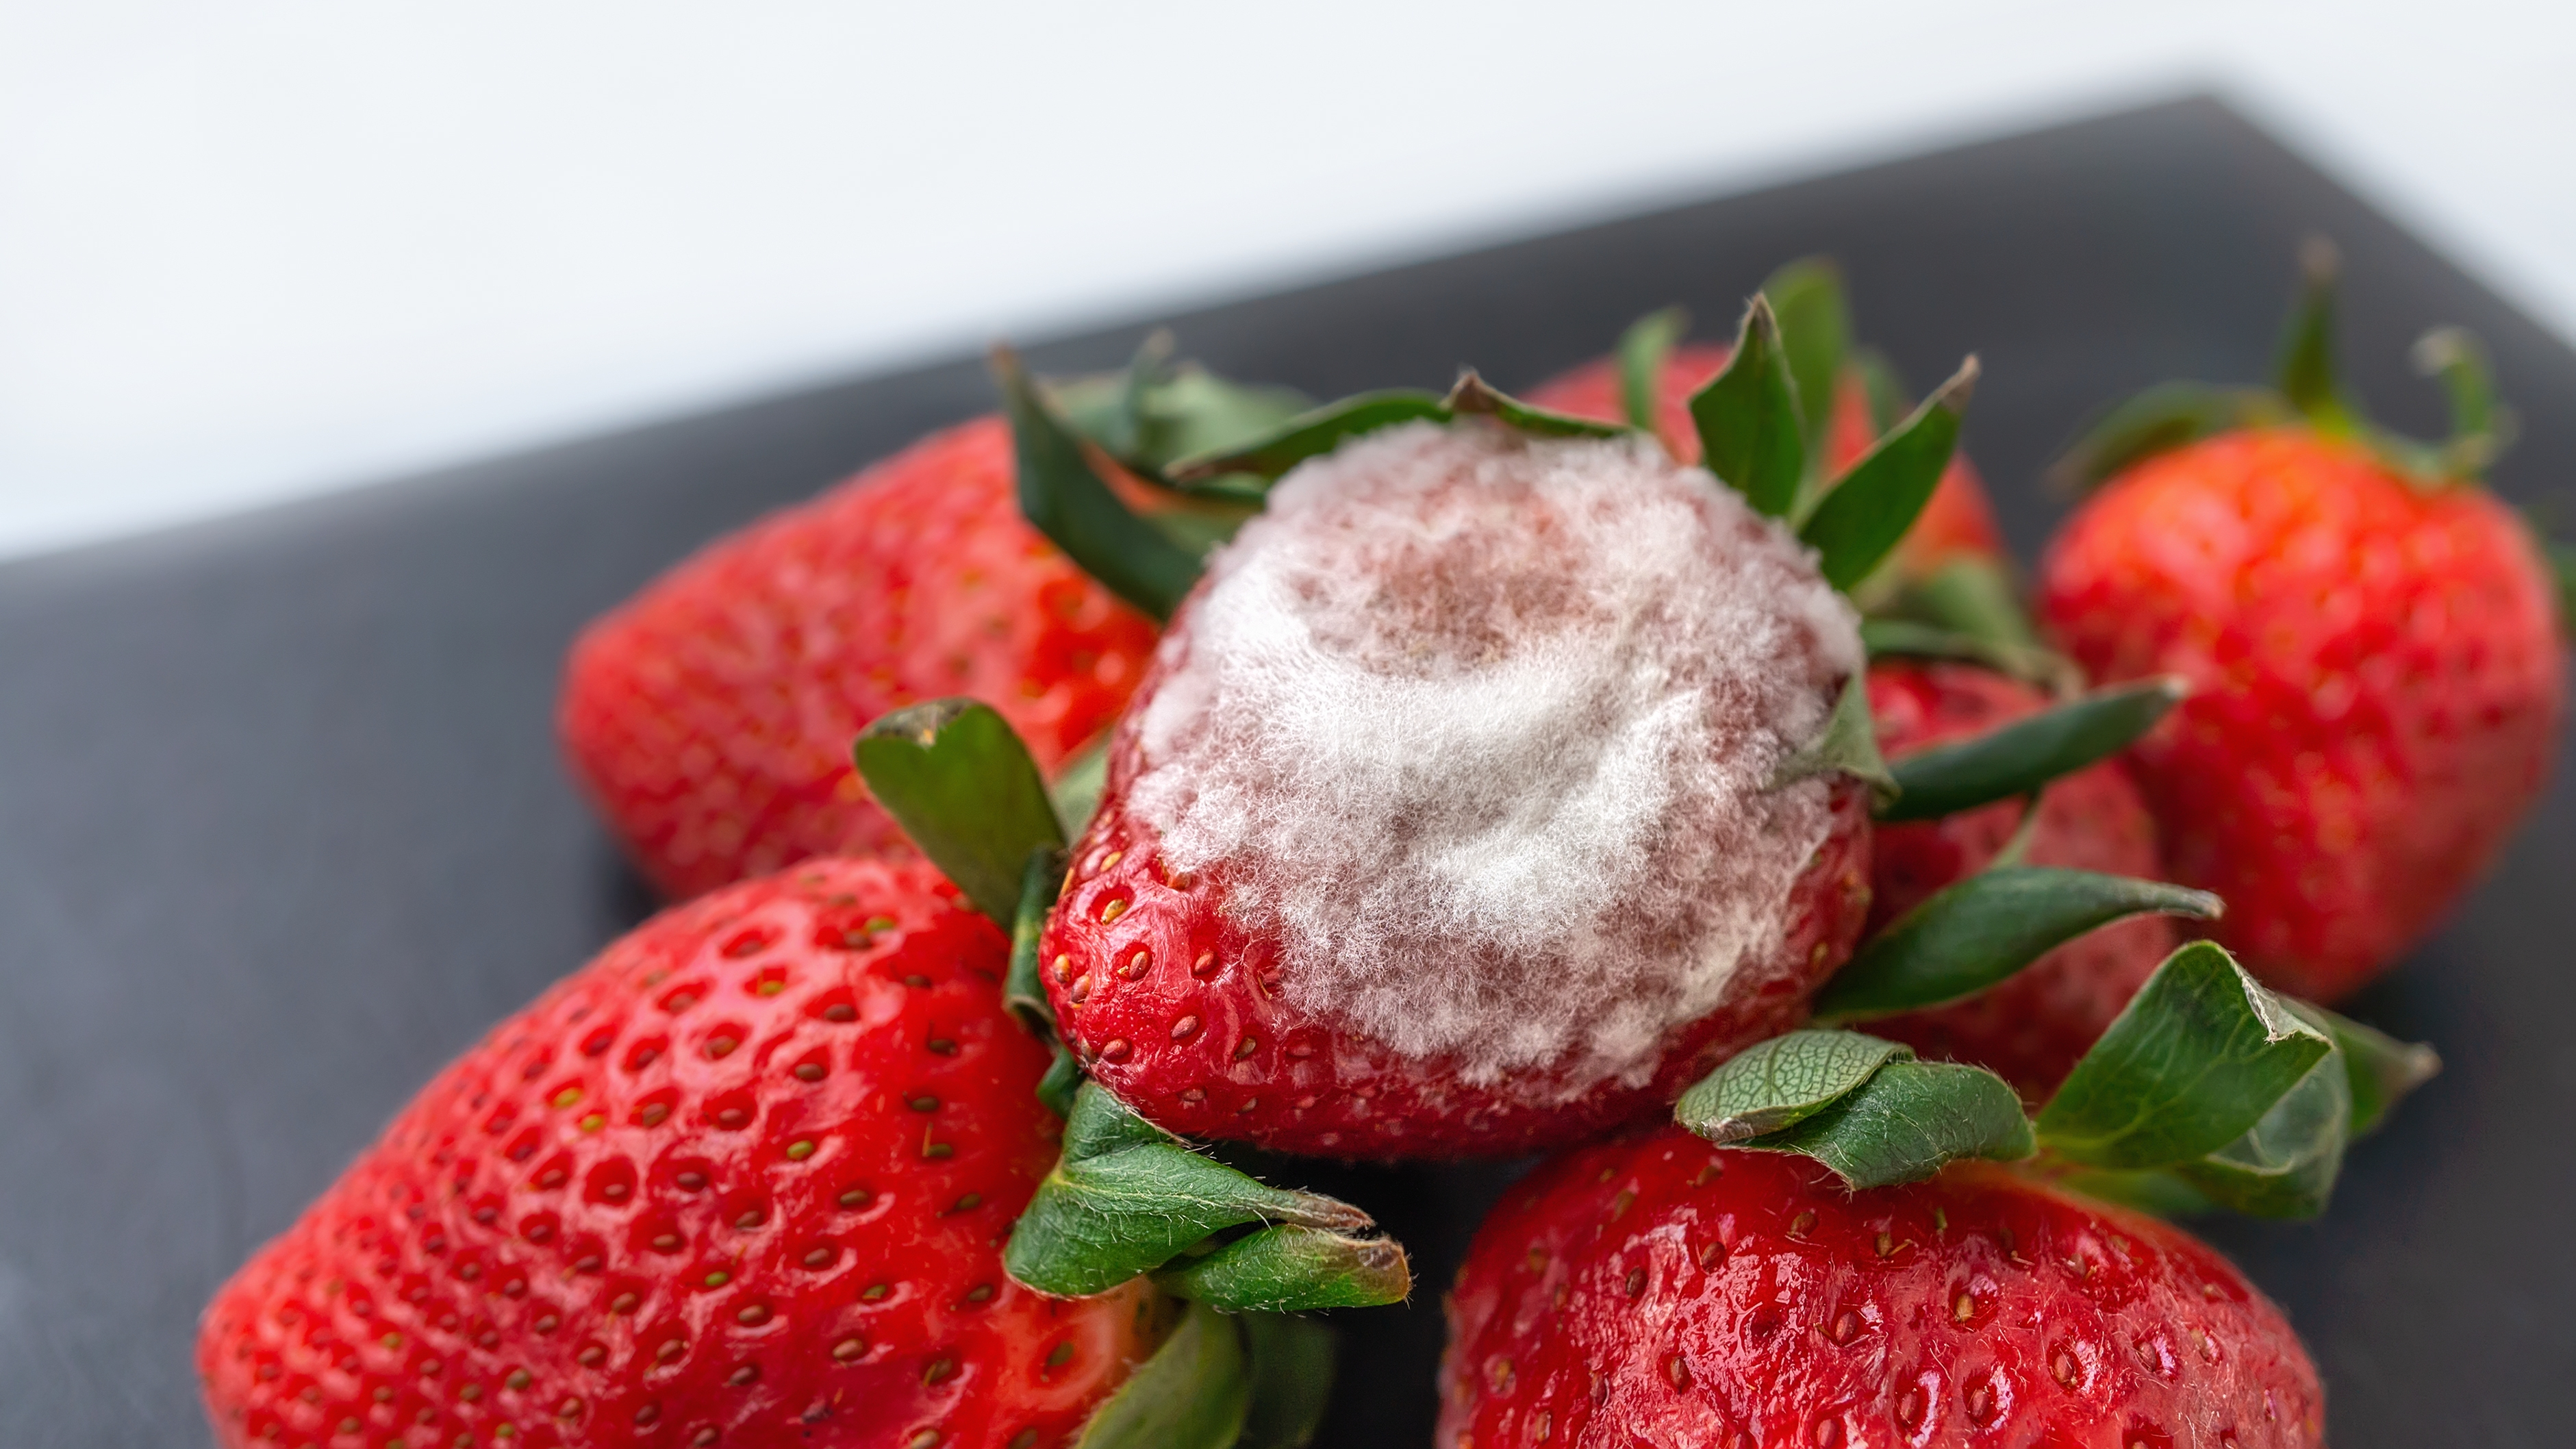 Los serios problemas de salud que puede ocasionarte comer fresas con moho